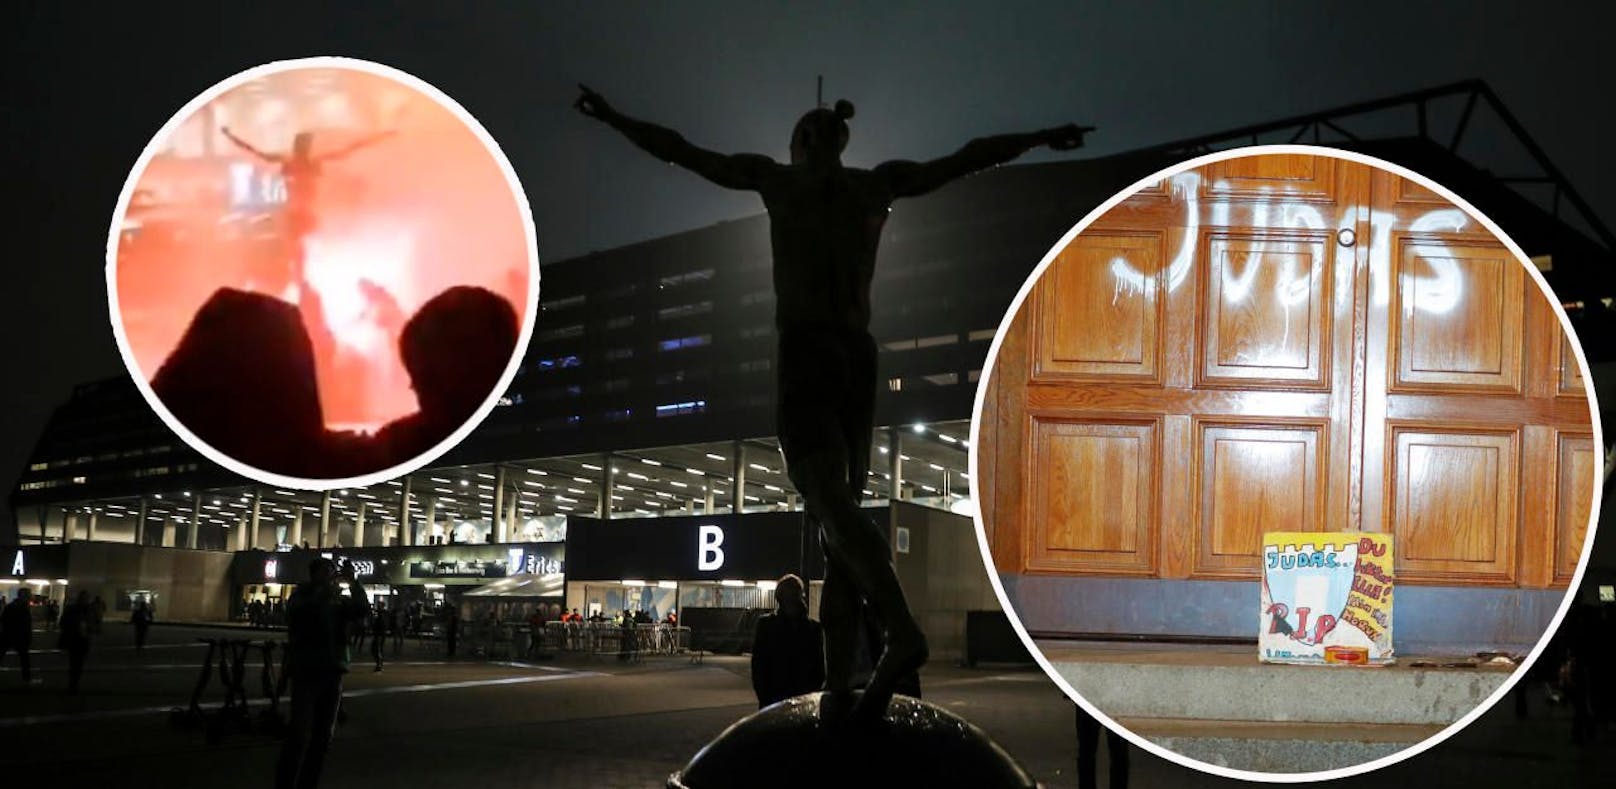 Zlatan Ibrahimovic kaufte Anteile des Rivalen. Malmö-Fans zünden seine Statue an und beschmieren sein Haus.